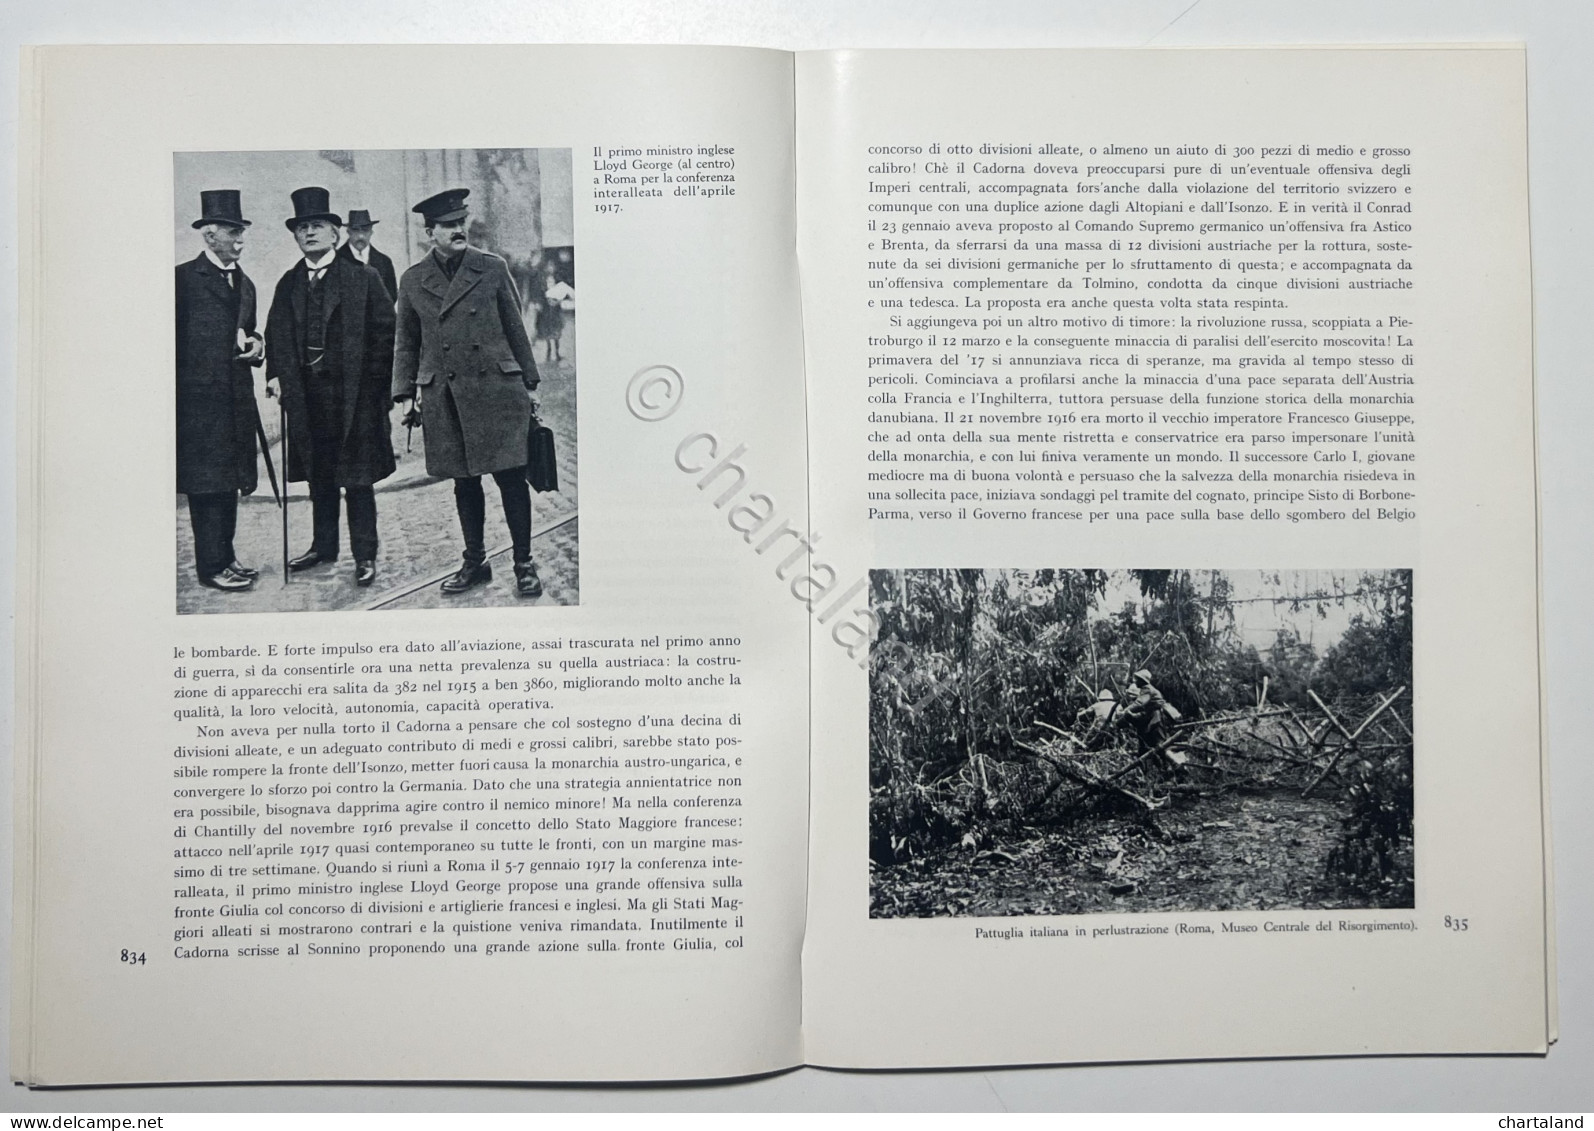 P. Pieri - L'Italia Nella Prima Guerra Mondiale ( 1915-1918 ) - Ed. 1965 - Andere & Zonder Classificatie